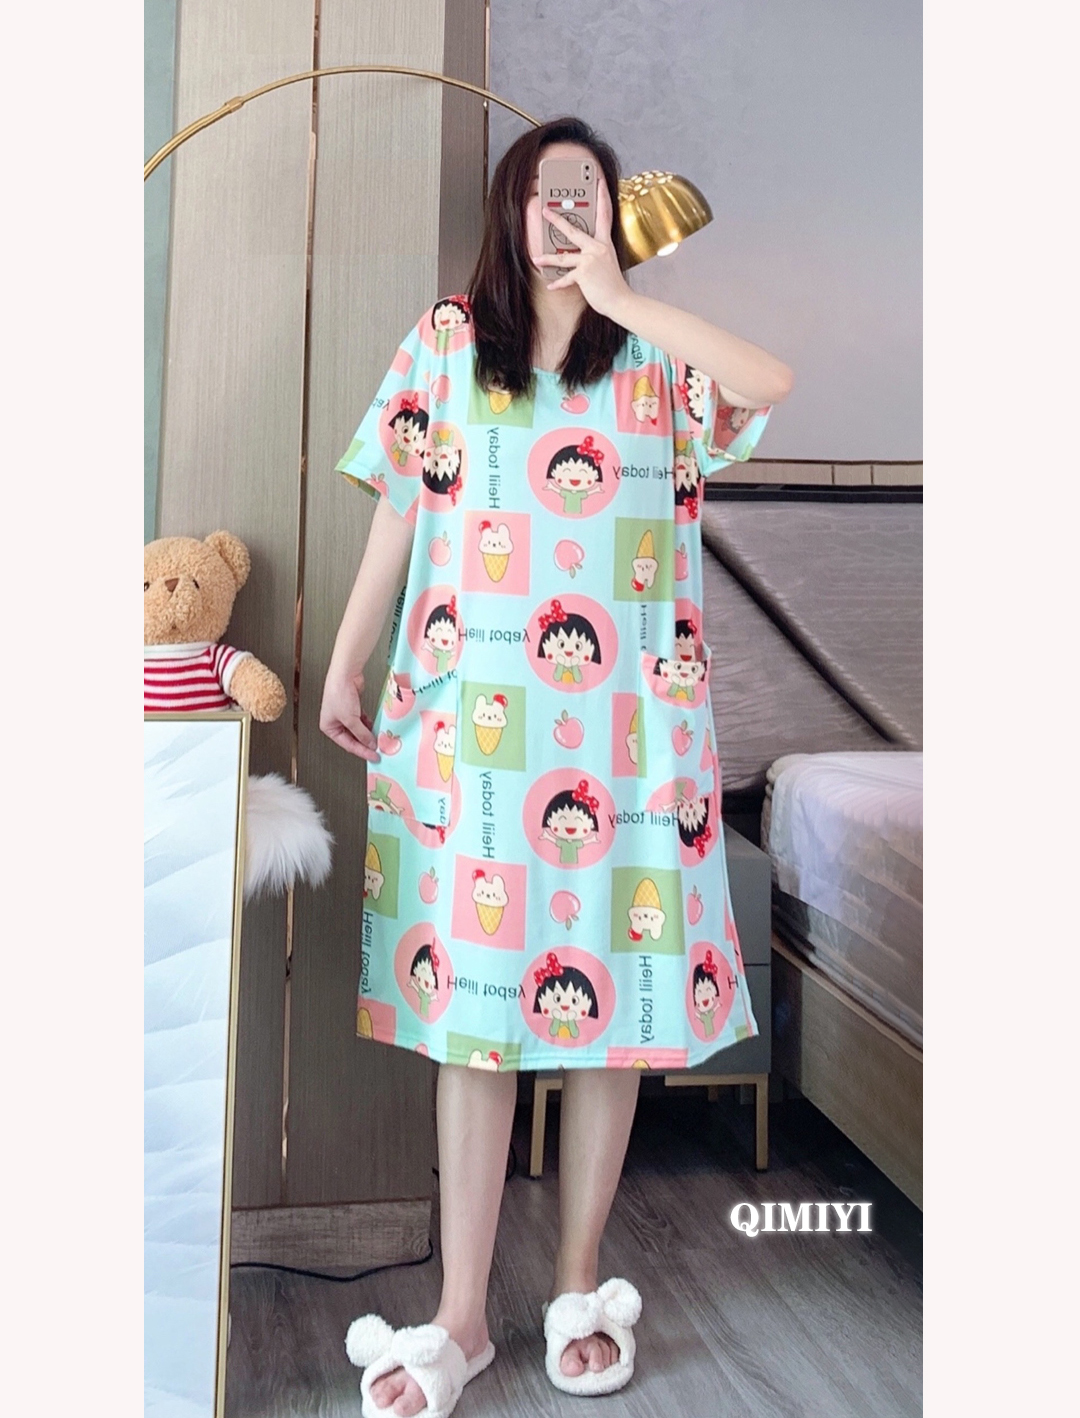 2021 ใหม่สไตล์เกาหลีชุดนอนผู้หญิงฤดูร้อนหลวมขนาดใหญ่แขนสั้นชุดนอนกระเป๋ากลางยาว / ใส่อยู่บ้านLoose plus size home wear pajamas/night skirts